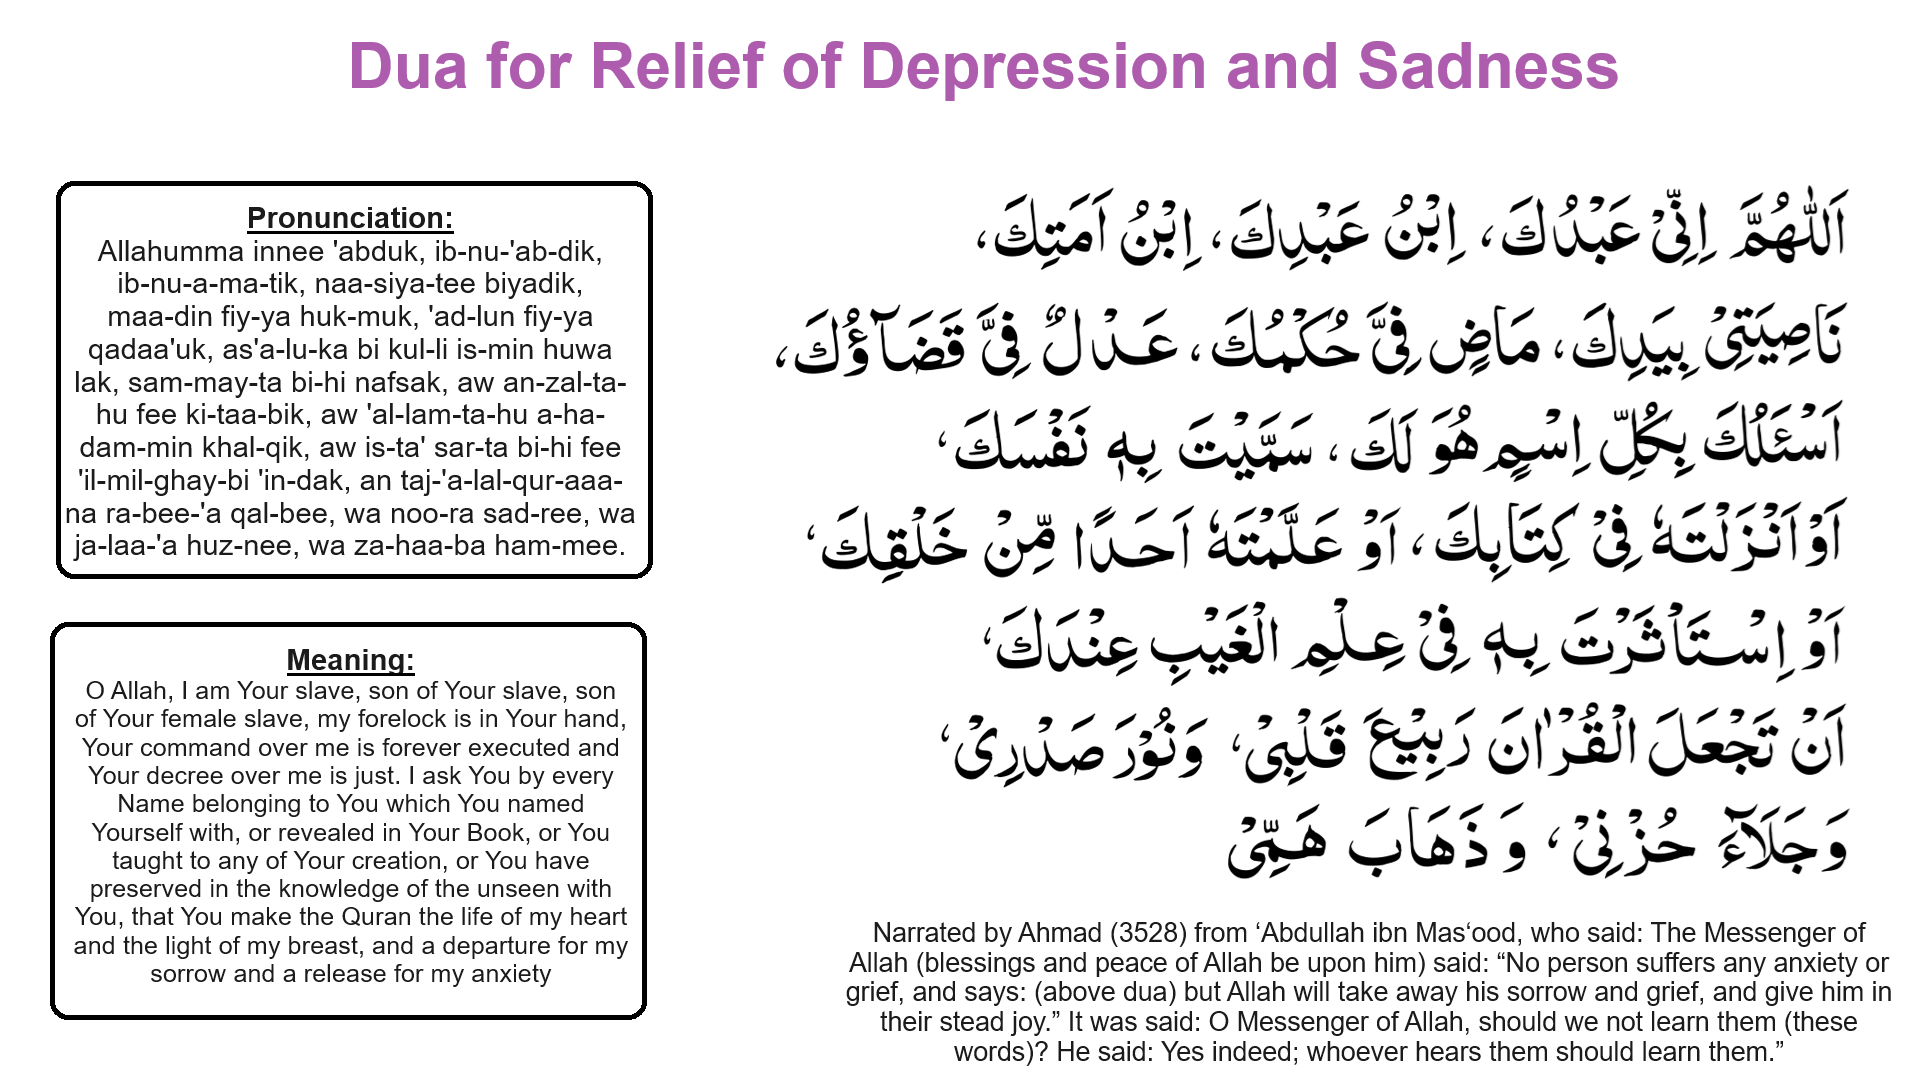 Dua for Relief of Depression and Sadness 1 - Dua for Relief of Depression and Sadness